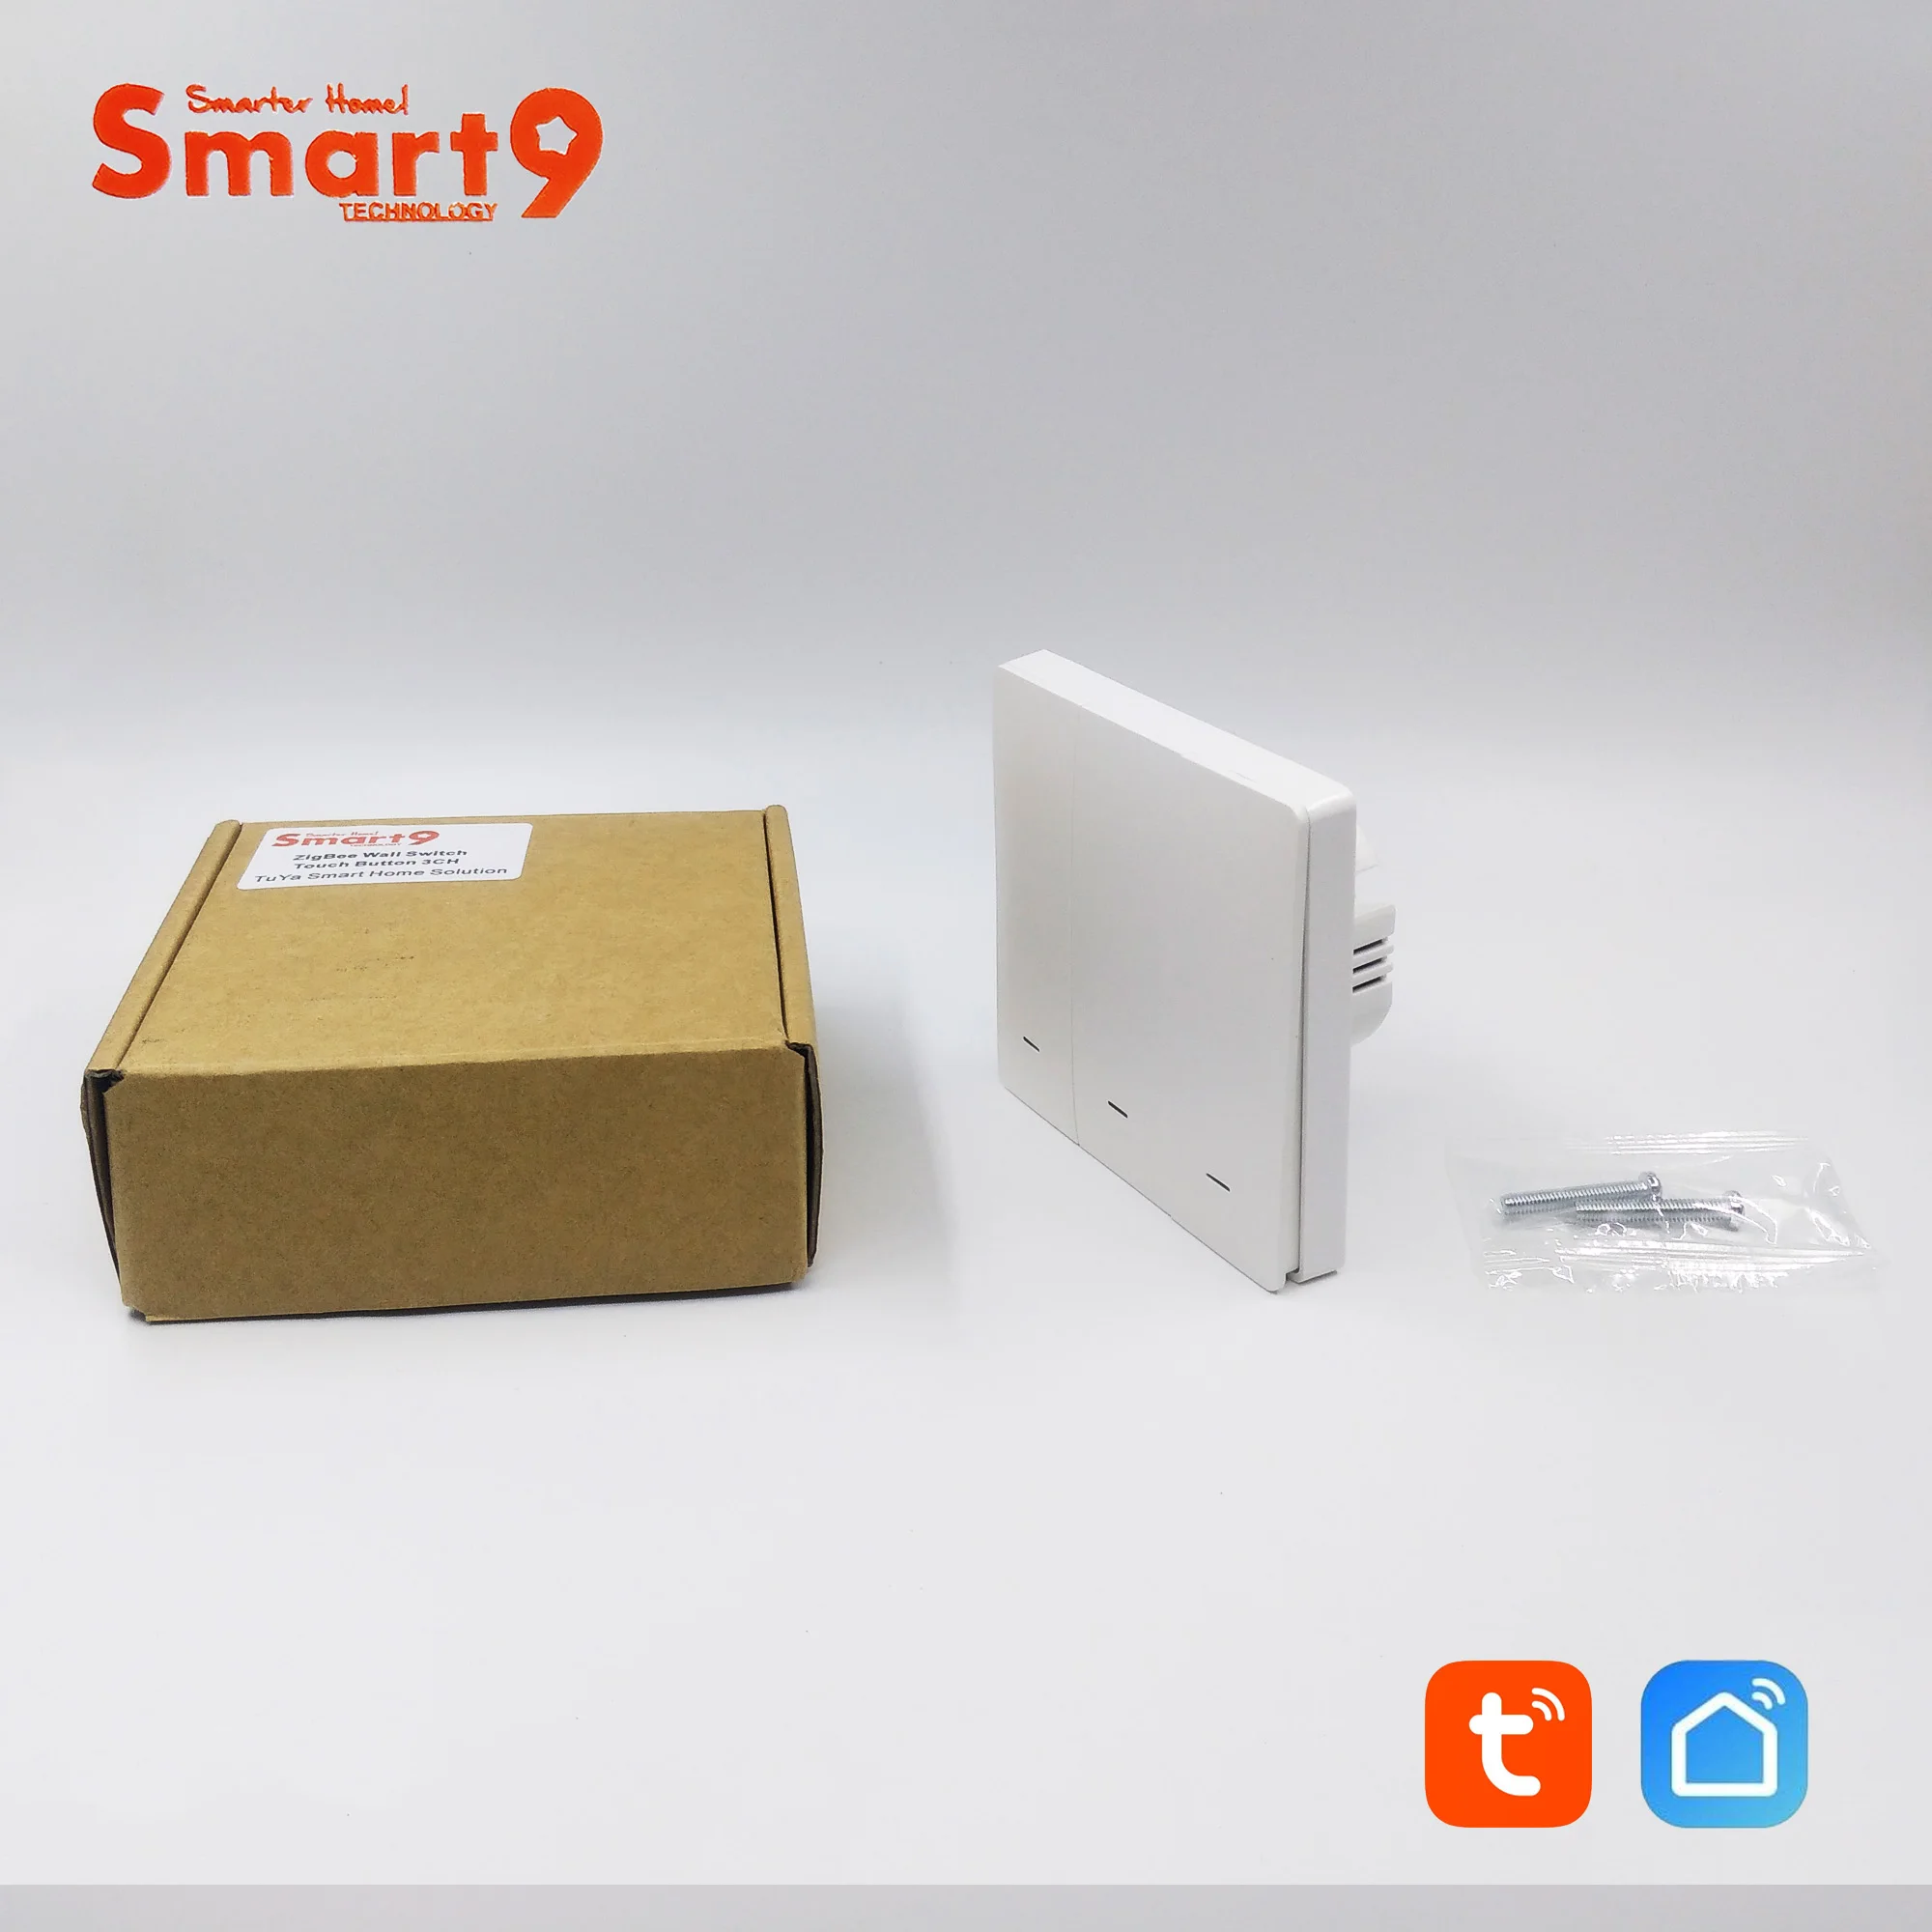 Настенный выключатель Smart9 ZigBee, работающий с ступицей TuYa ZigBee, дизайн кнопки с управлением через приложение Smart Life, питание от TuYa